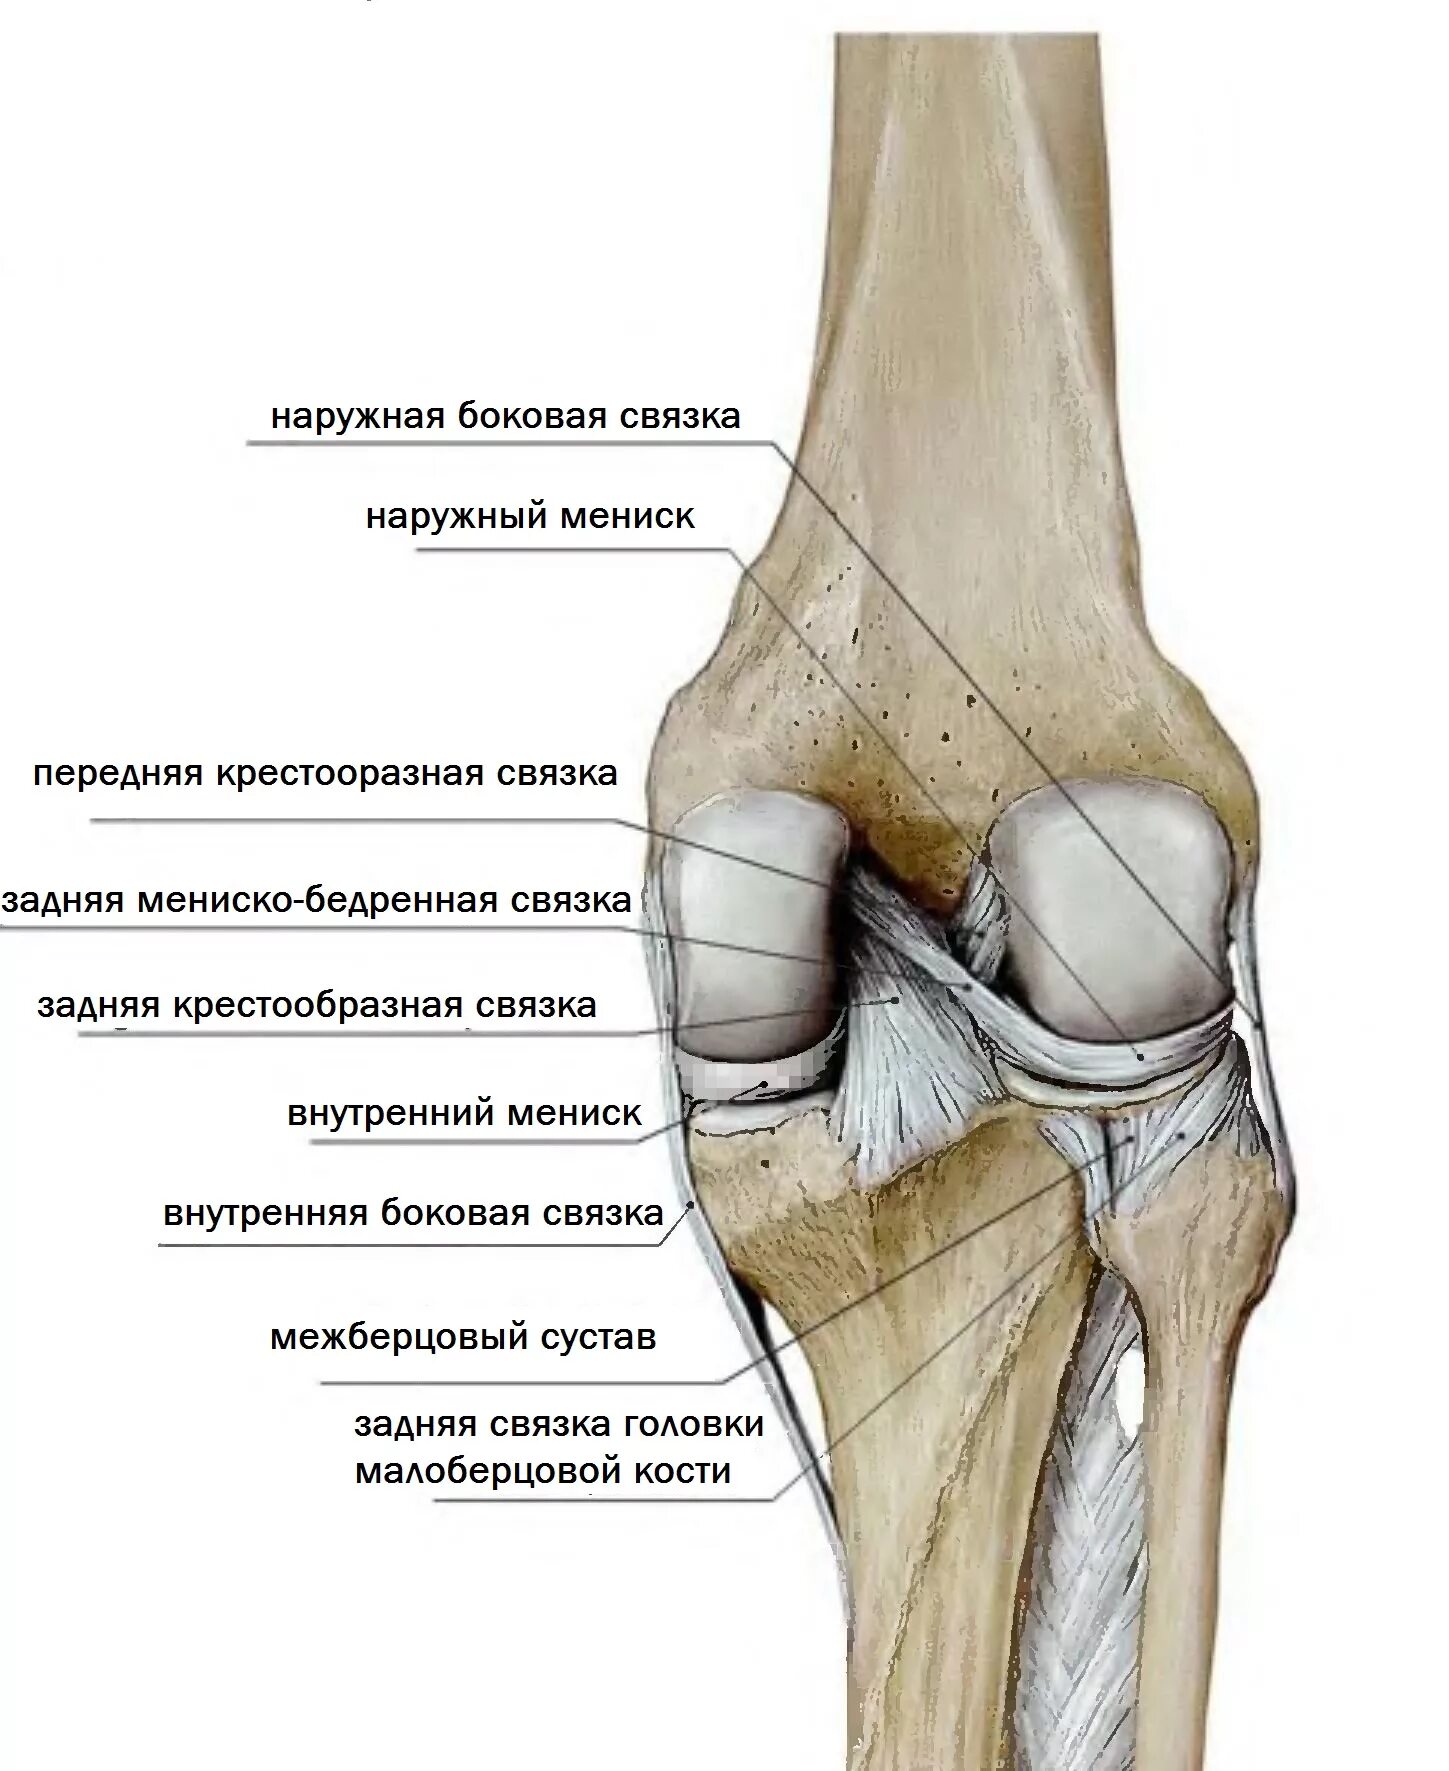 Мыщелки колена. Суставная поверхность надколенника медиально. Большеберцовая кость и коленный сустав. Задняя связка головки малоберцовой кости. Коленный сустав малоберцовая кость.